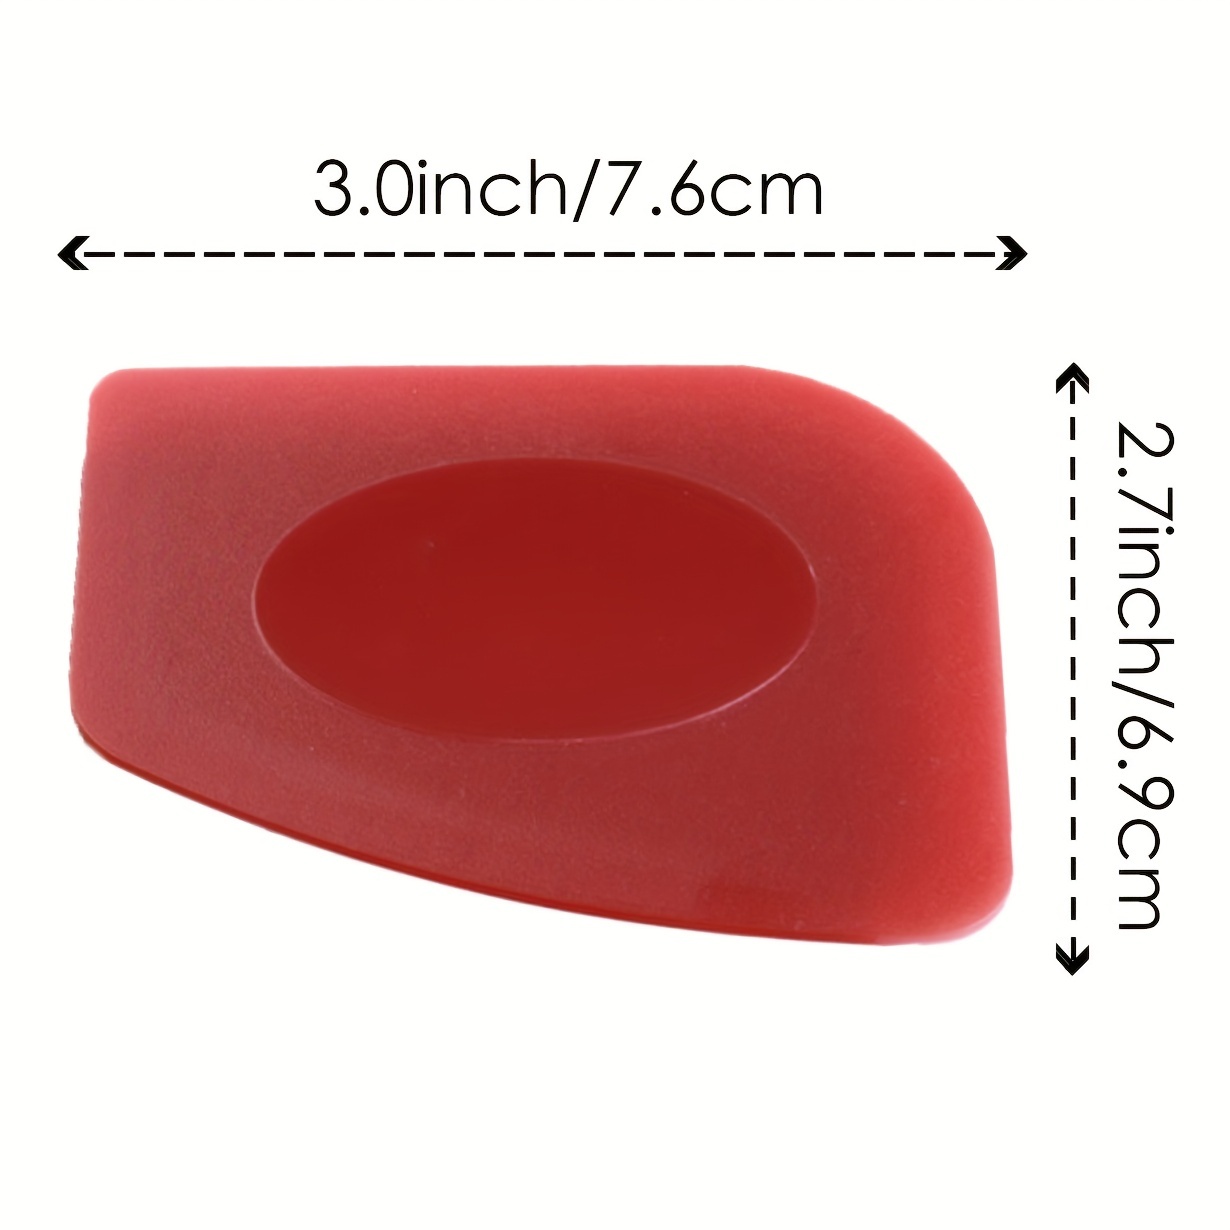 Durable Pan Scrapers Red And Black Plastic Pan Scraper Tools - Temu